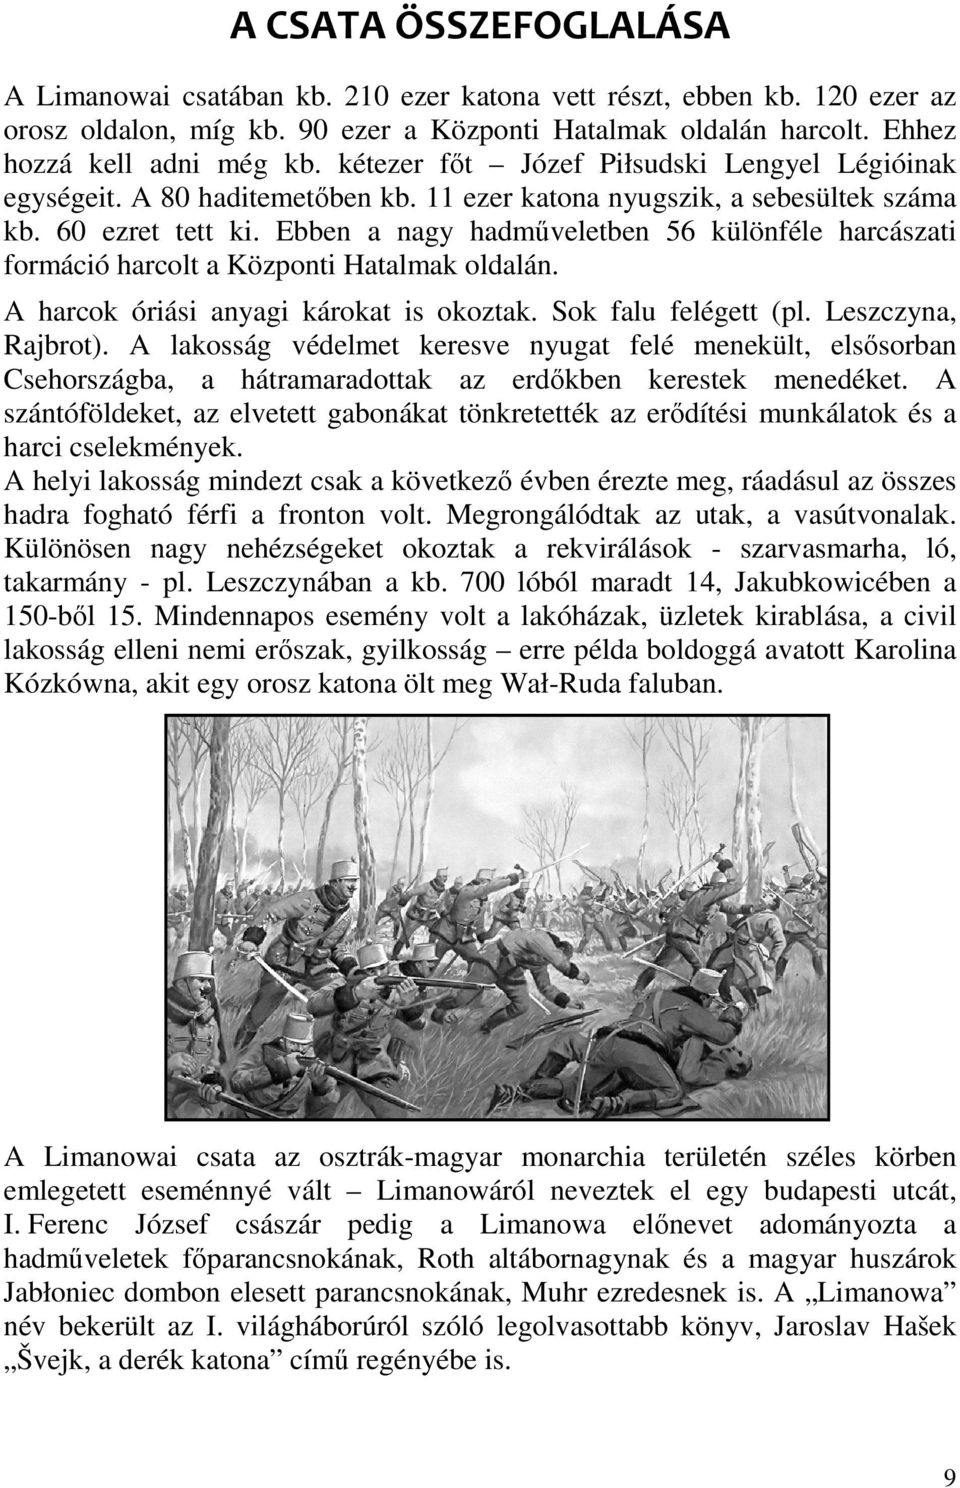 Ebben a nagy hadműveletben 56 különféle harcászati formáció harcolt a Központi Hatalmak oldalán. A harcok óriási anyagi károkat is okoztak. Sok falu felégett (pl. Leszczyna, Rajbrot).